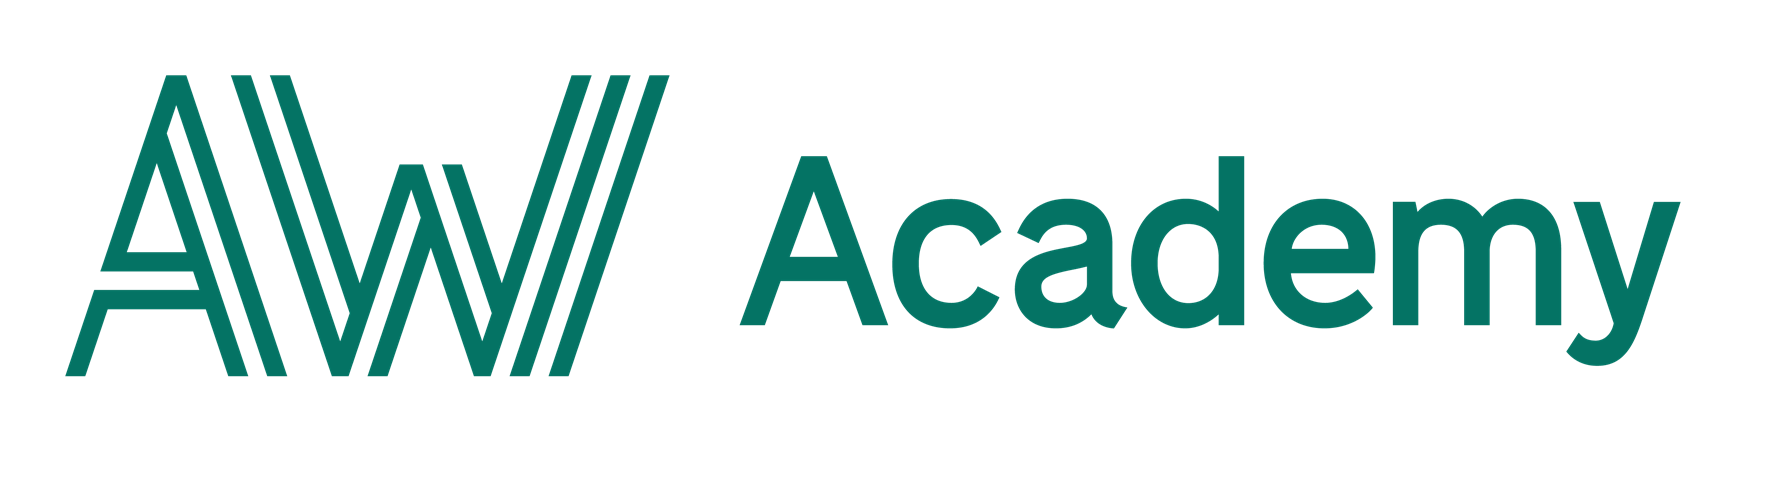 Academic Work - Lär dig C#.NET Fullstack via AW Academy och starta din nya karriär inom IT-branschen!